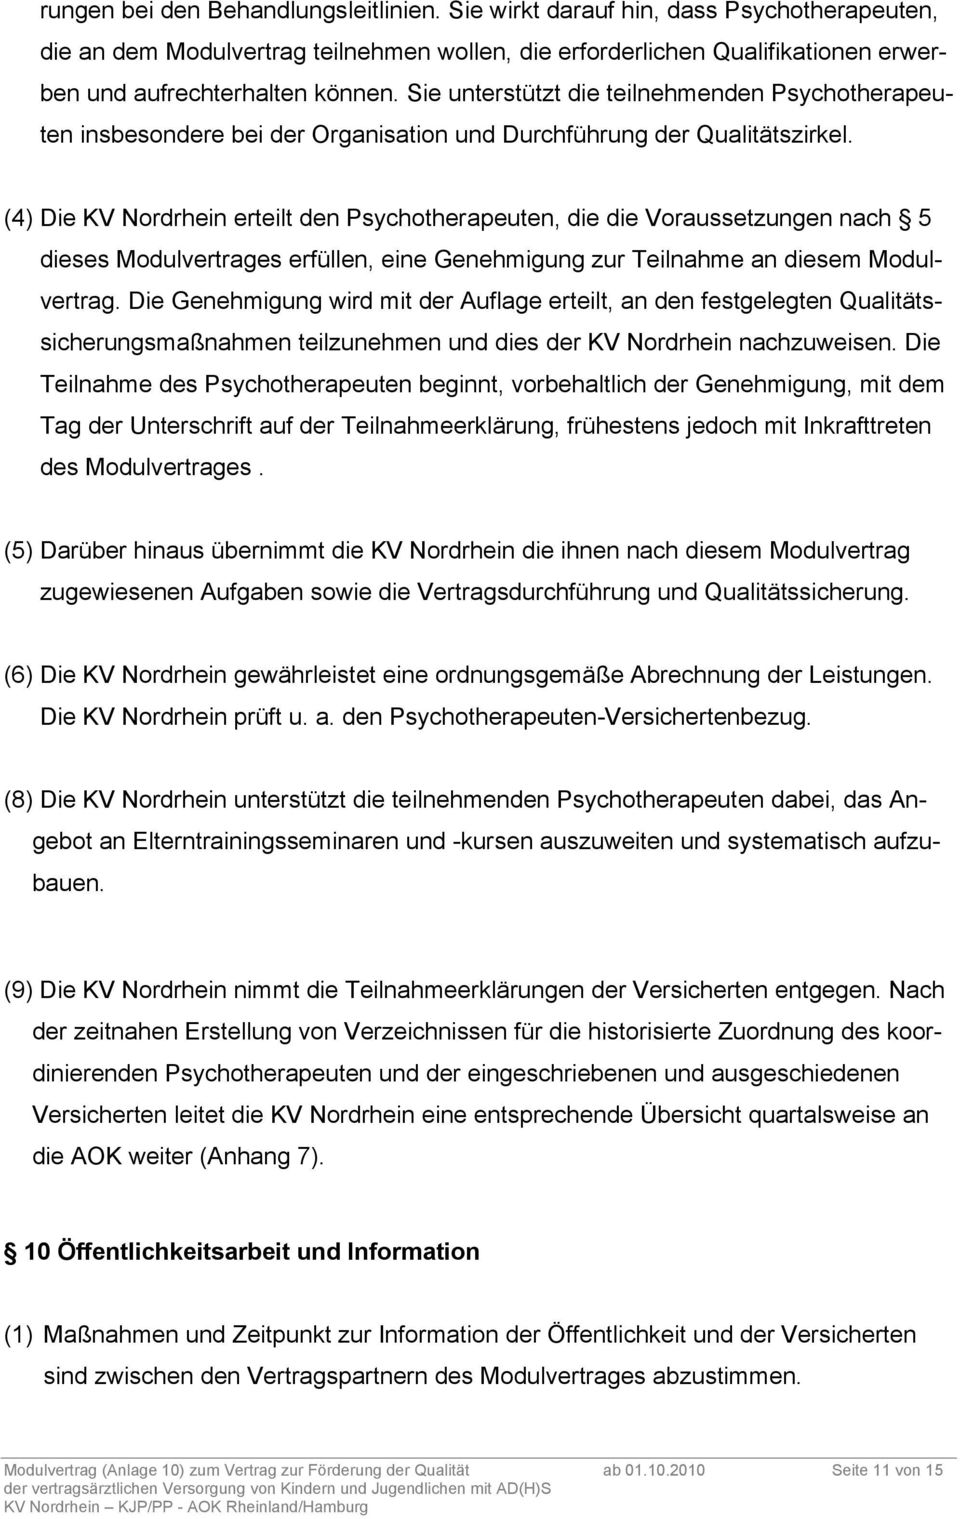 (4) Die KV Nordrhein erteilt den Psychotherapeuten, die die Voraussetzungen nach 5 dieses Modulvertrages erfüllen, eine Genehmigung zur Teilnahme an diesem Modulvertrag.